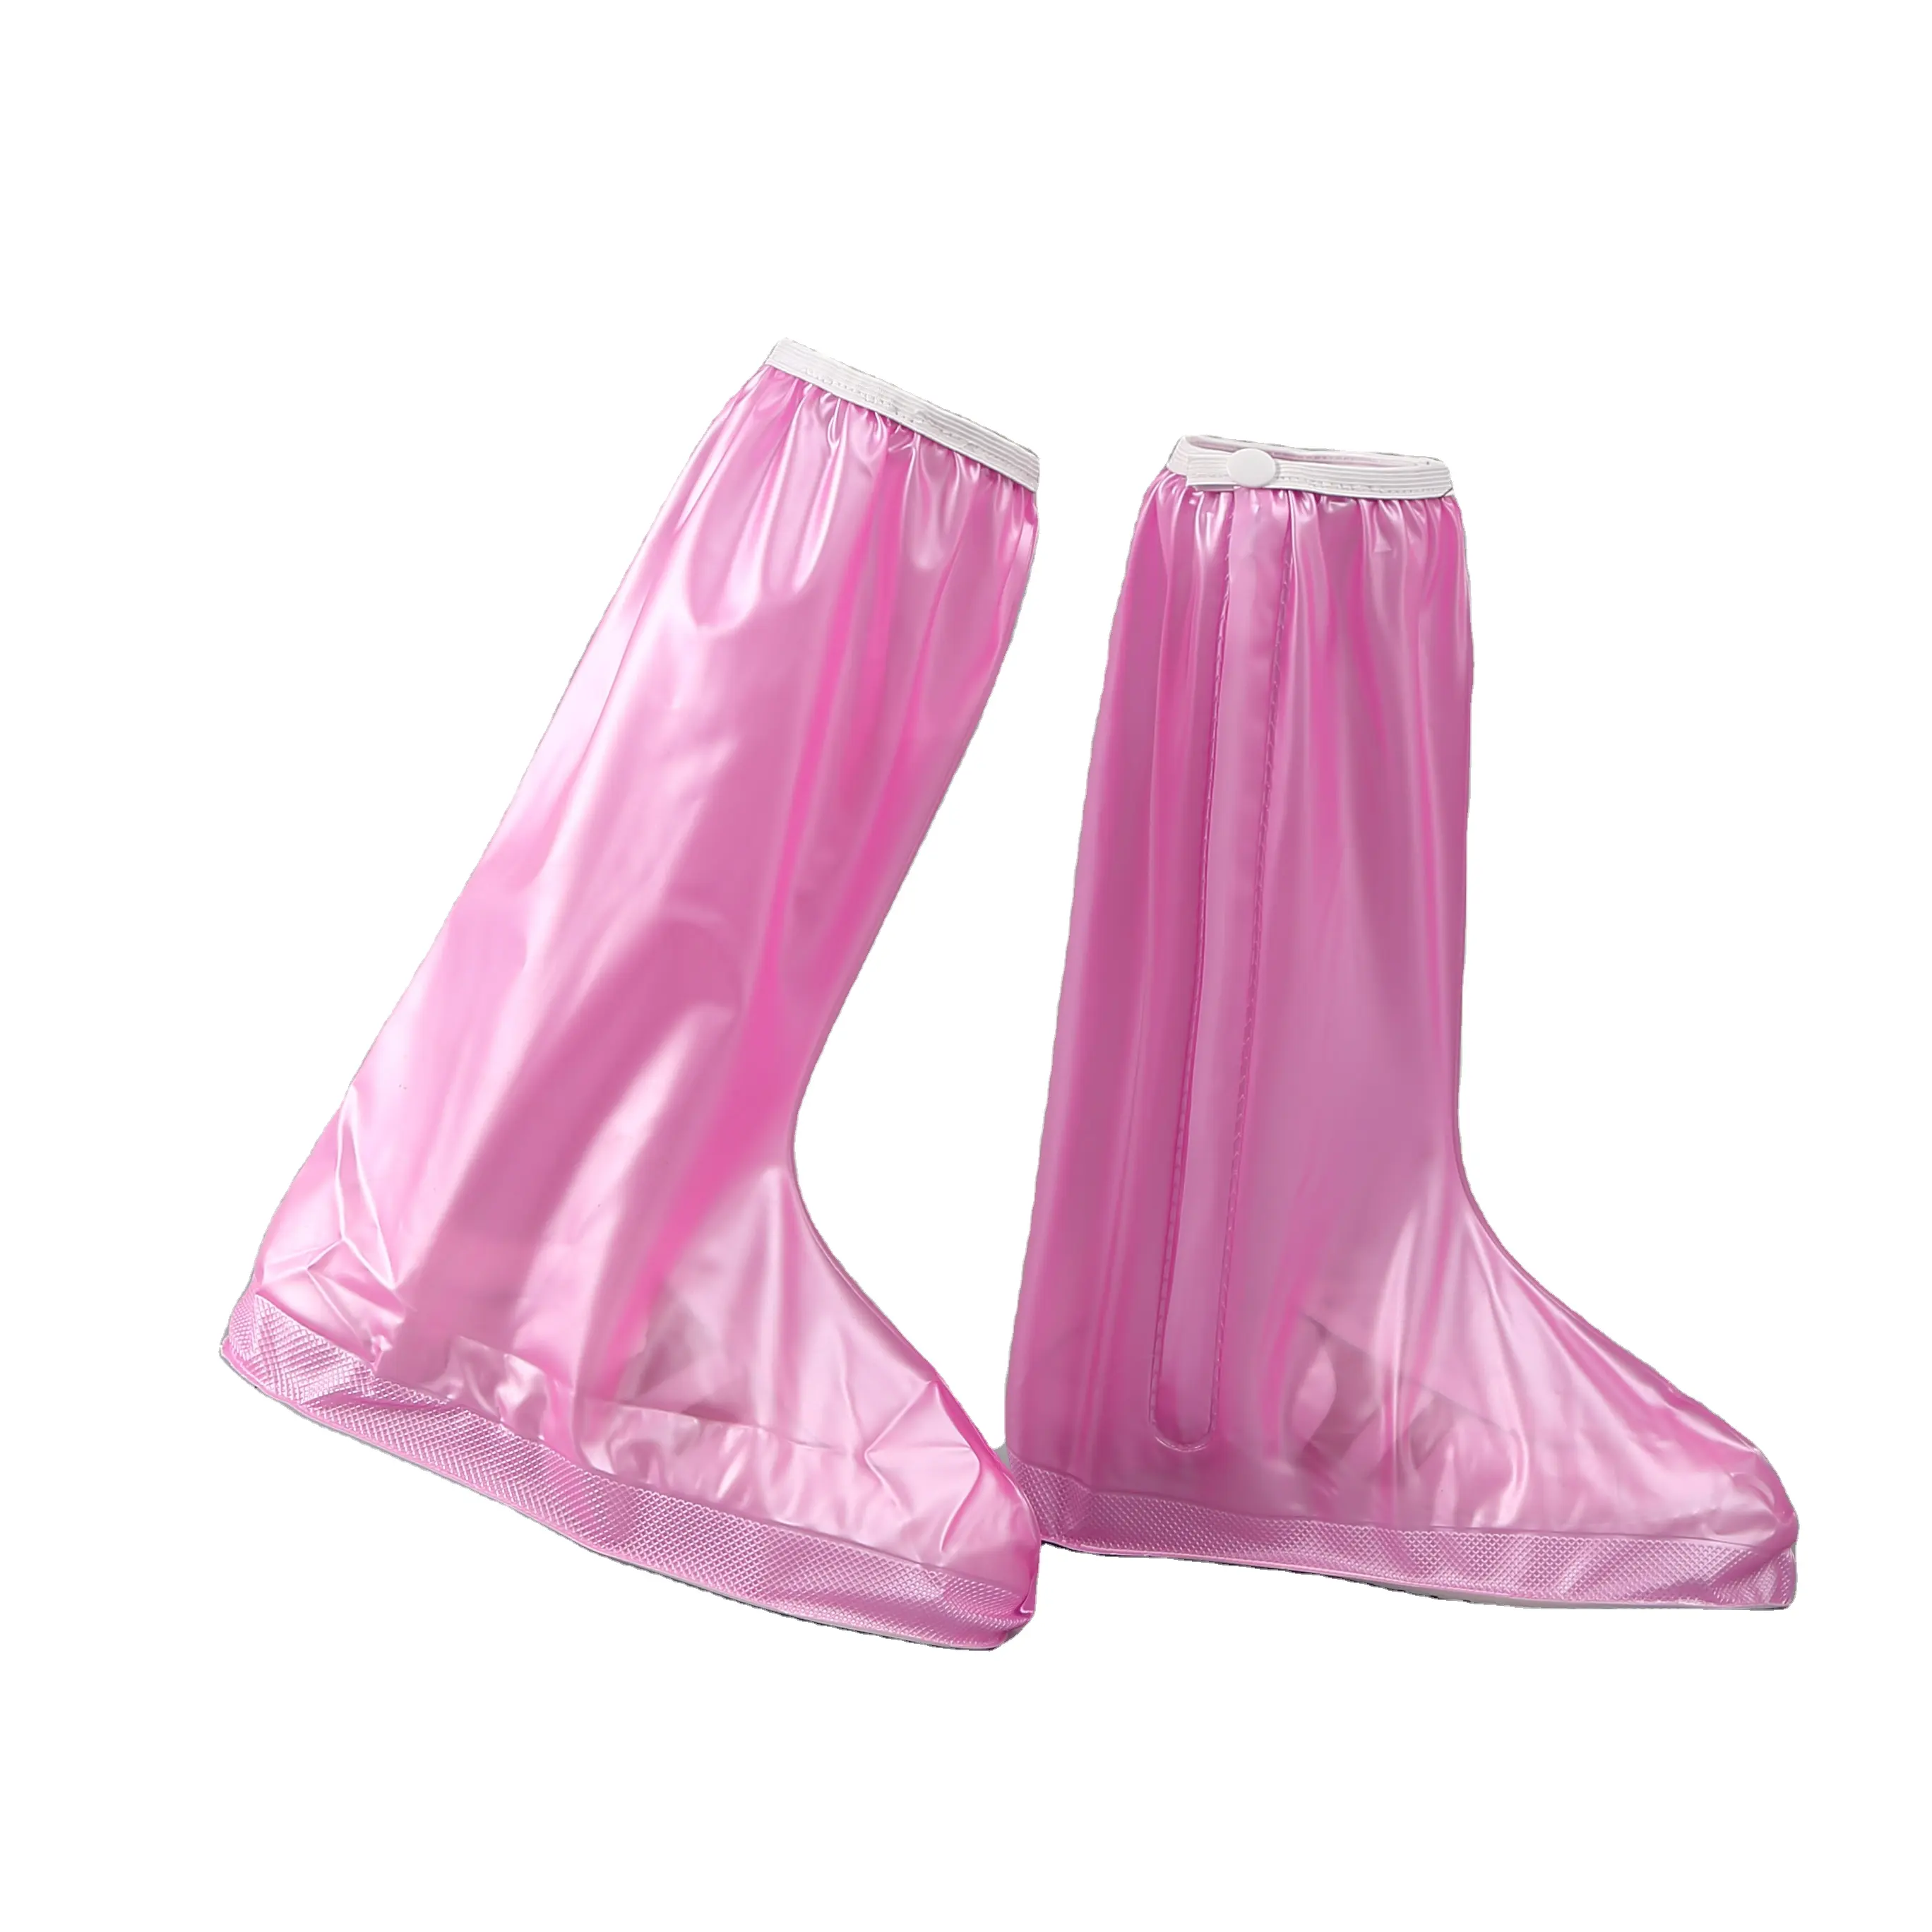 Бахилы на обувь ПВХ от воды и грязи LVR 819A 2XL 43-44 31.5 см (Pink)